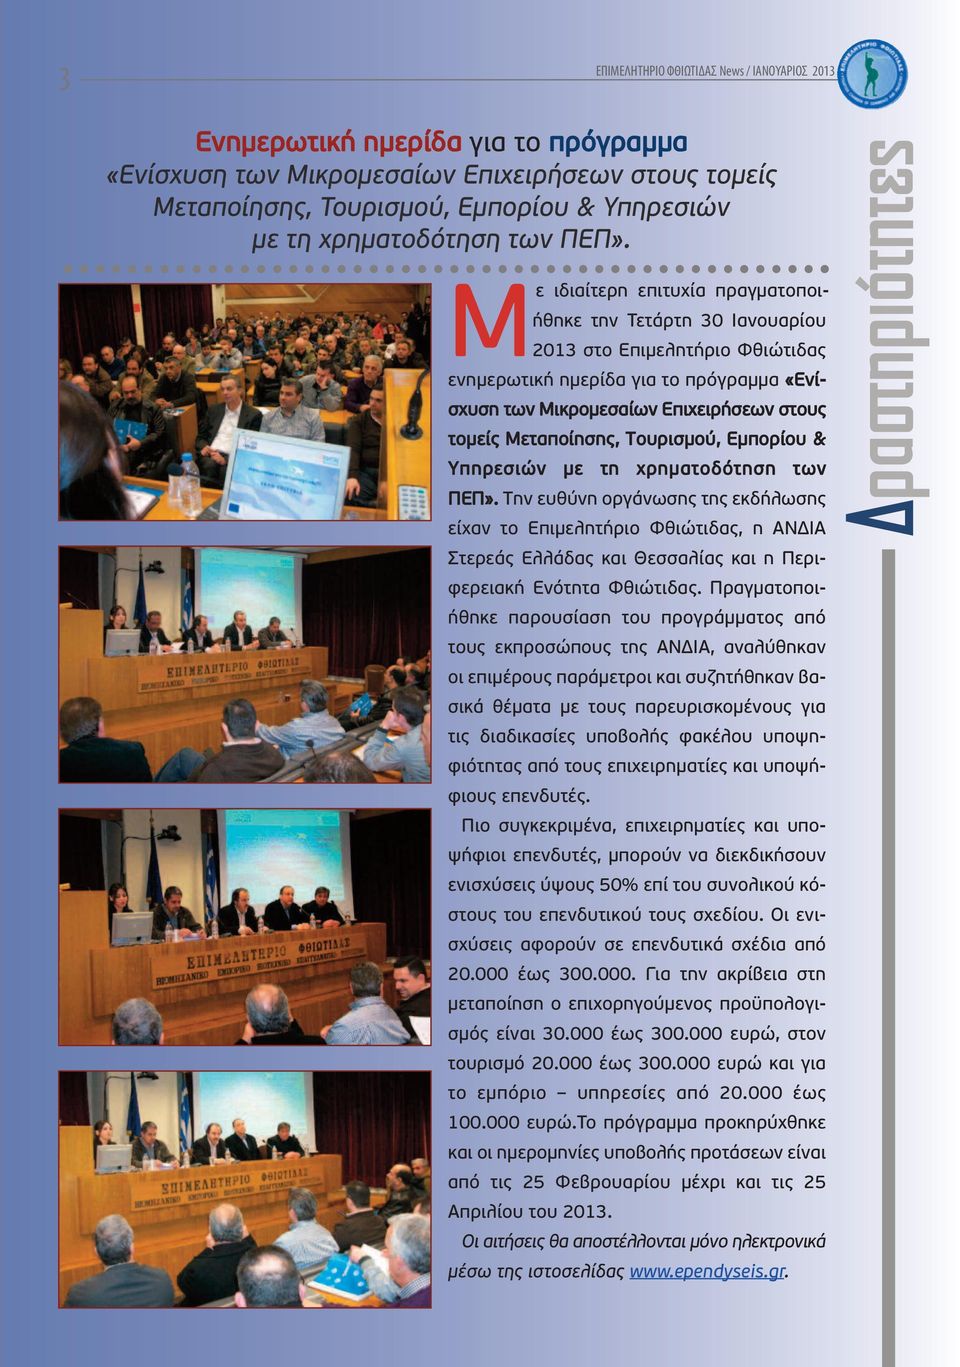 Με ιδιαίτερη επιτυχία πραγματοποιήθηκε την Τετάρτη 30 Ιανουαρίου 2013 στο Επιμελητήριο Φθιώτιδας ενημερωτική ημερίδα για το πρόγραμμα «Ενίσχυση των Μικρομεσαίων Επιχειρήσεων στους τομείς Μεταποίησης,